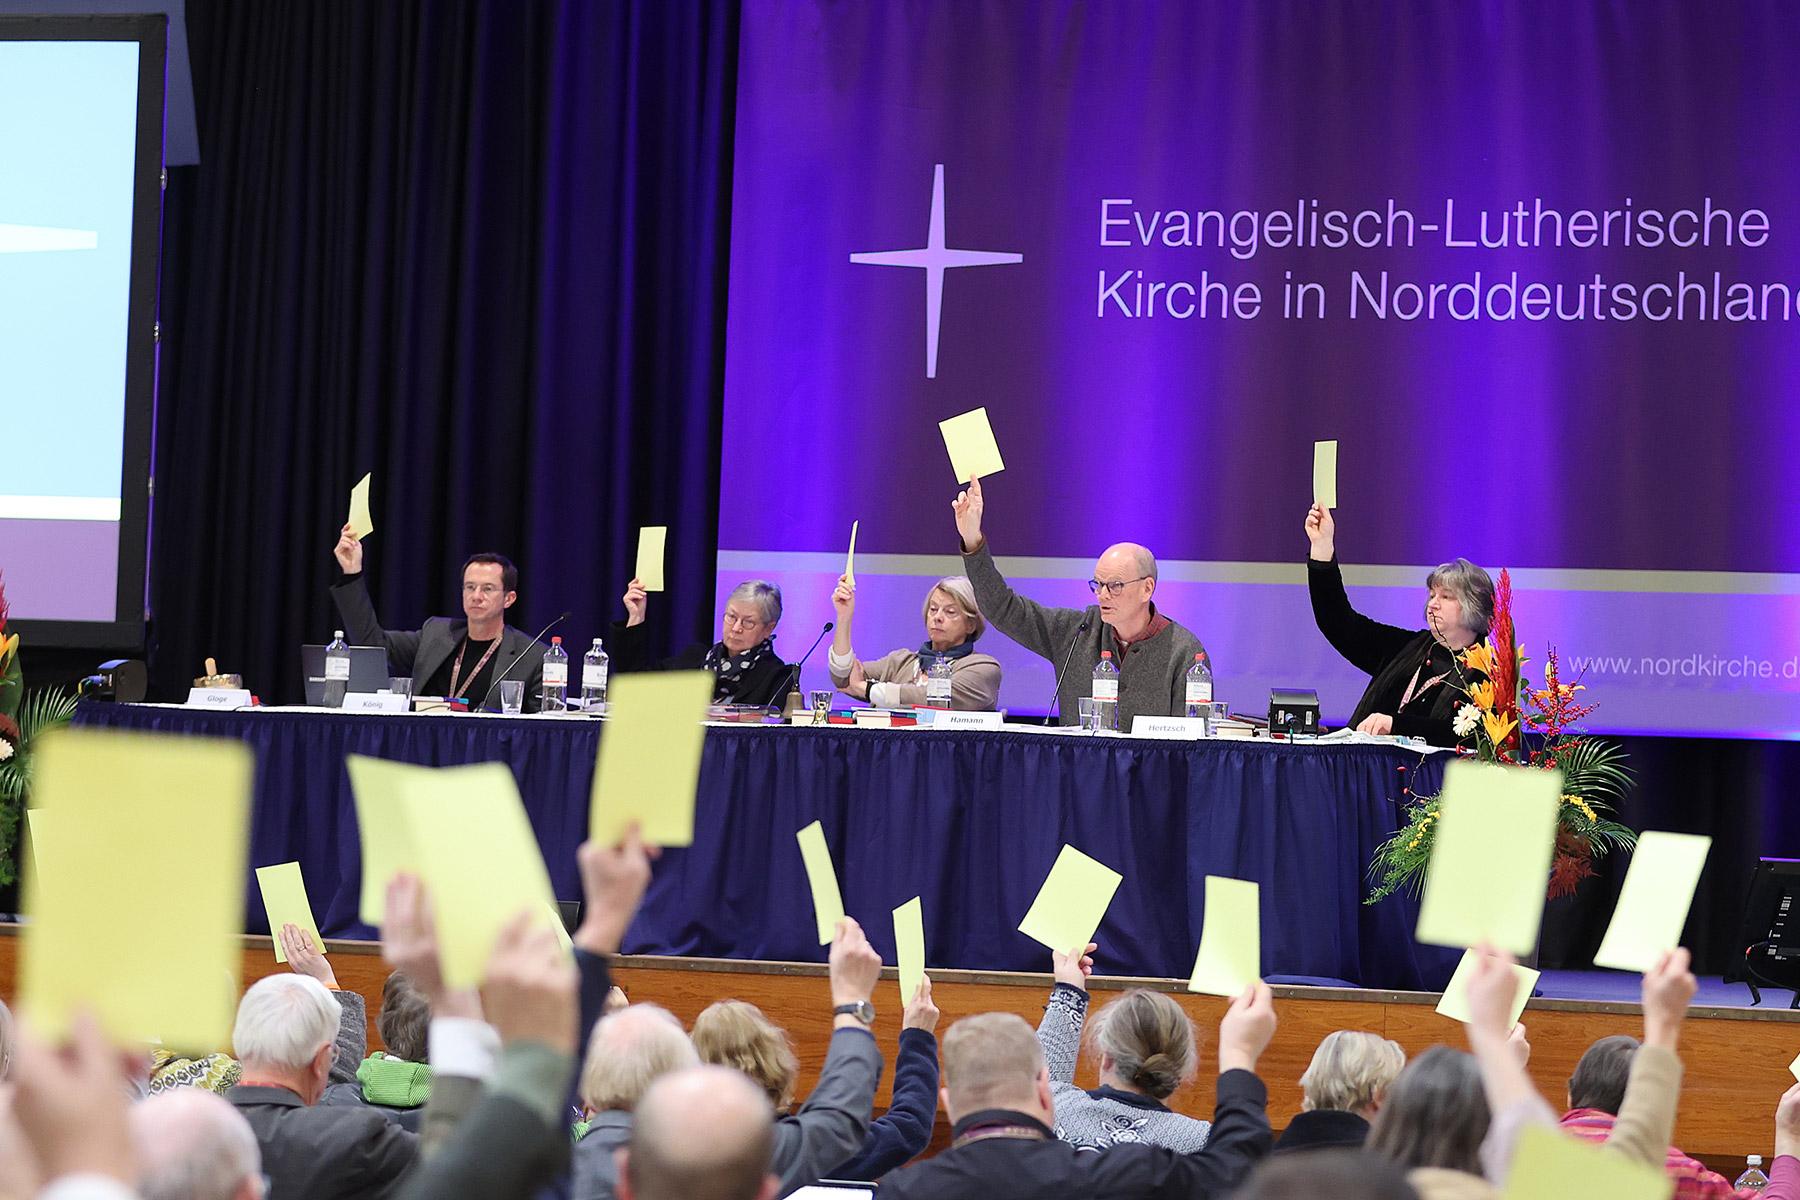 Synodentagung der Evangelisch-Lutherischen Kirche in Norddeutschland